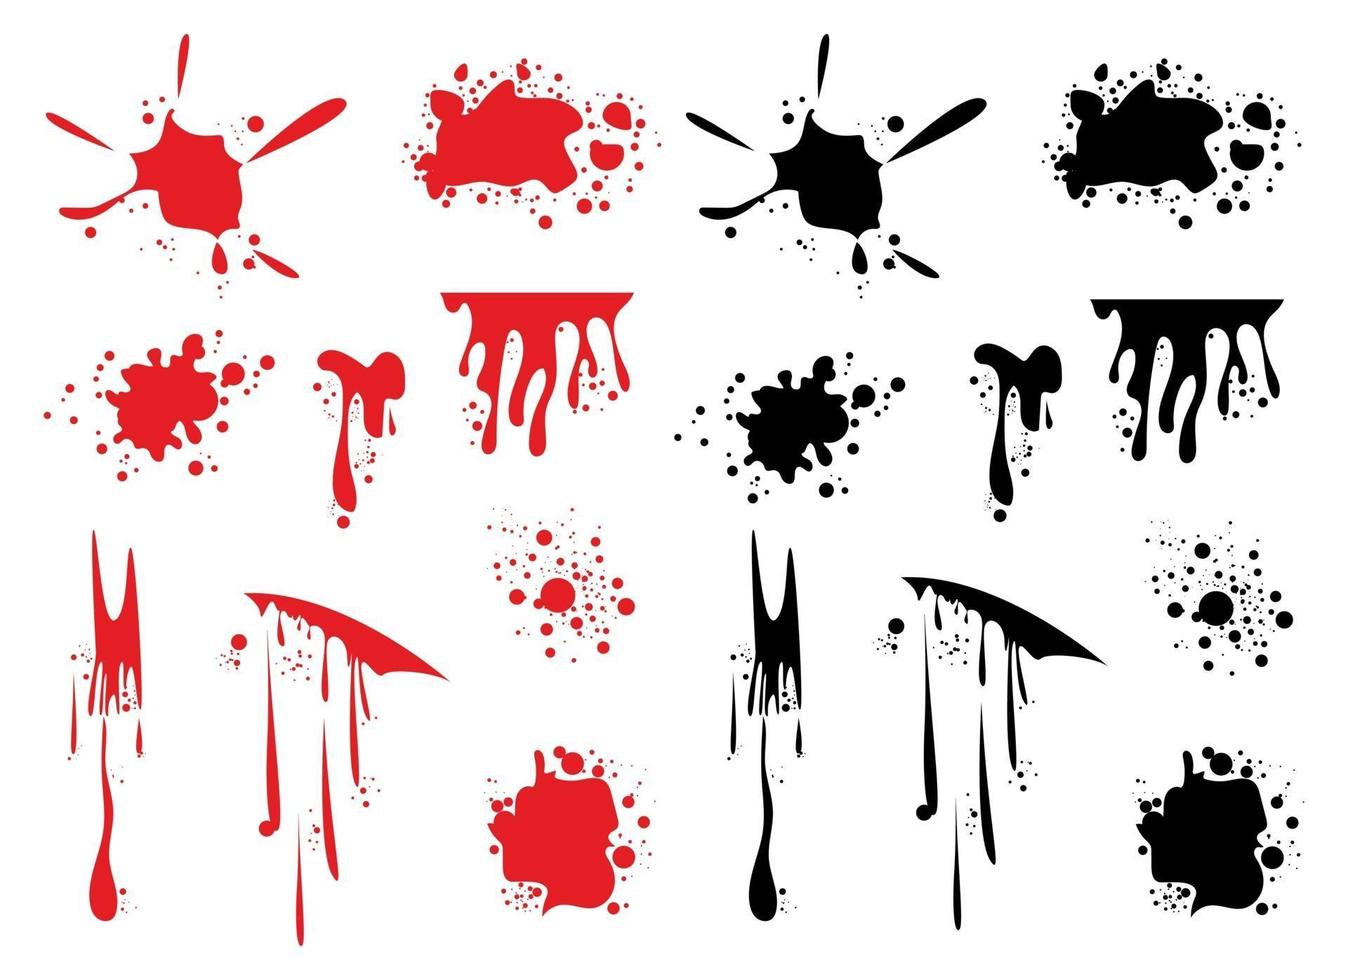 bloed spatten vector illustratie ontwerpset geïsoleerd op een witte achtergrond